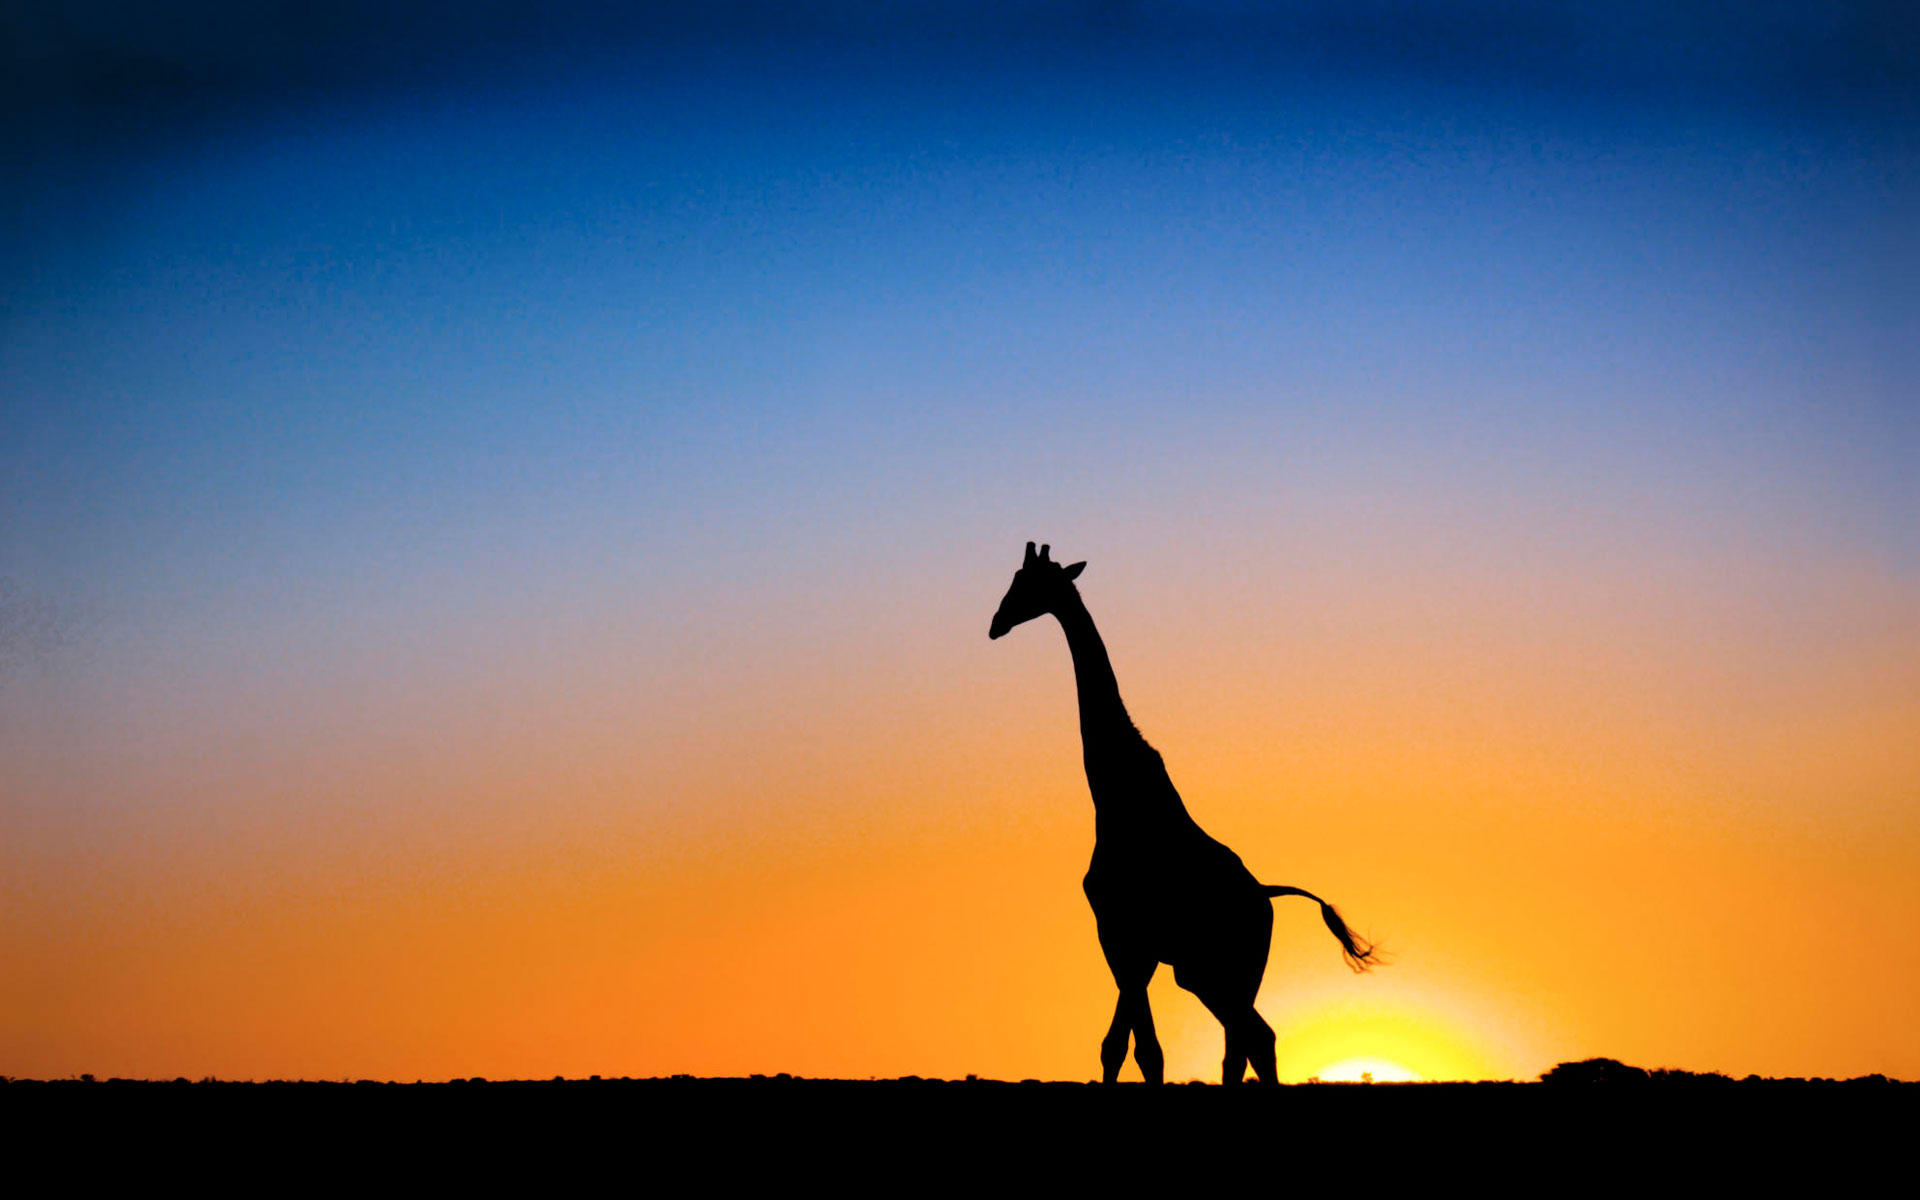 giraffe sunset wallpaper